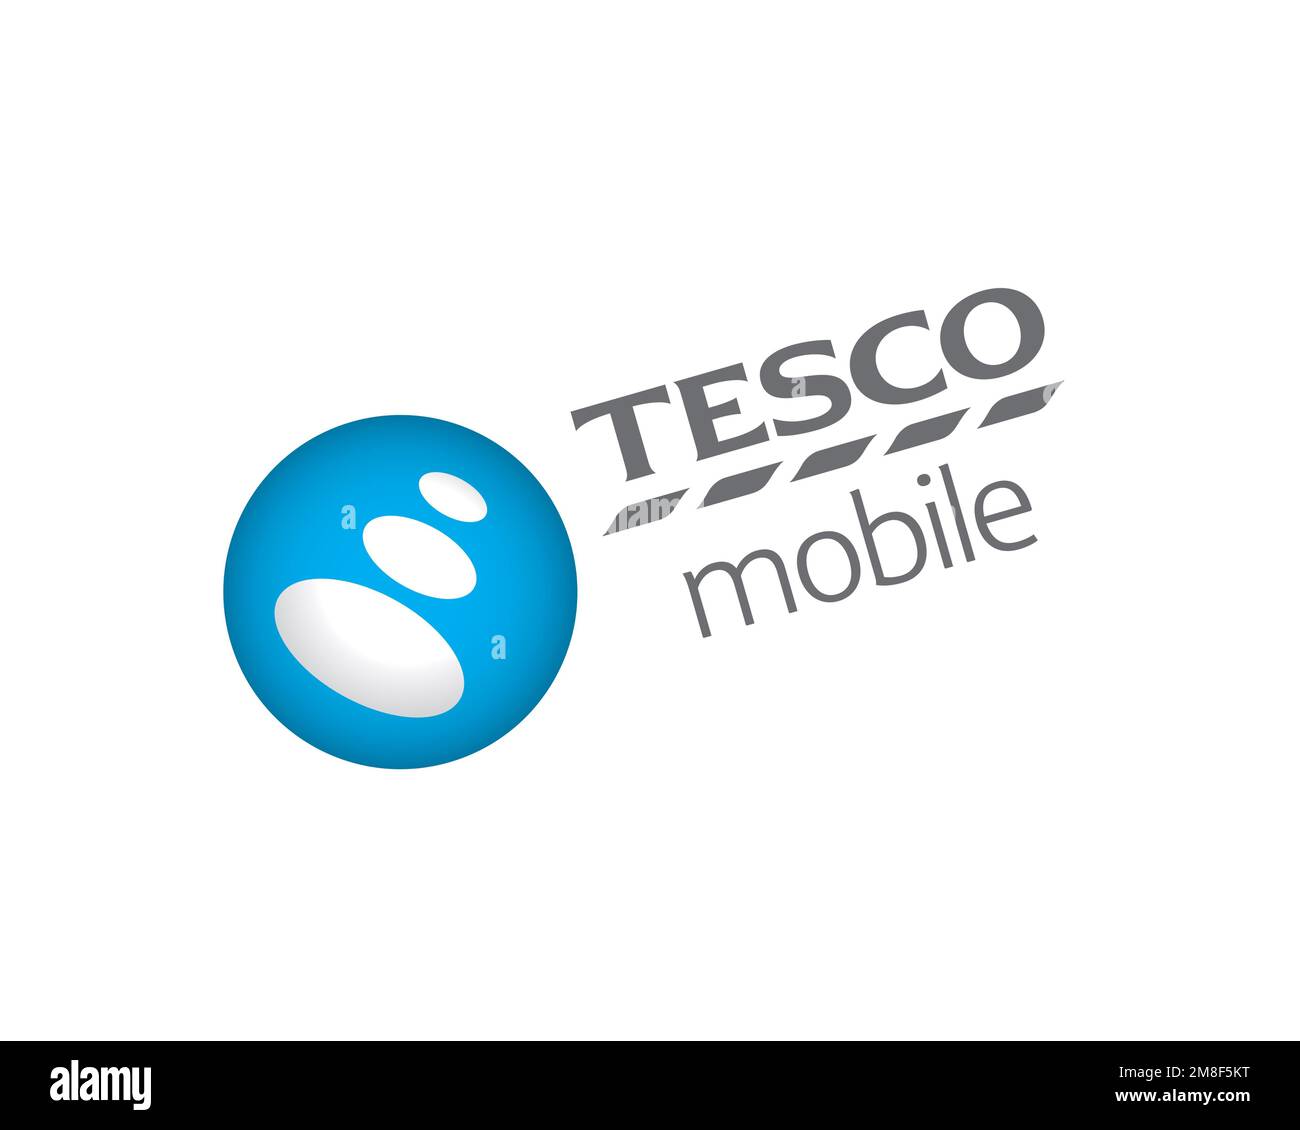 Tesco Mobile, rotated logo, white background Stock Photo